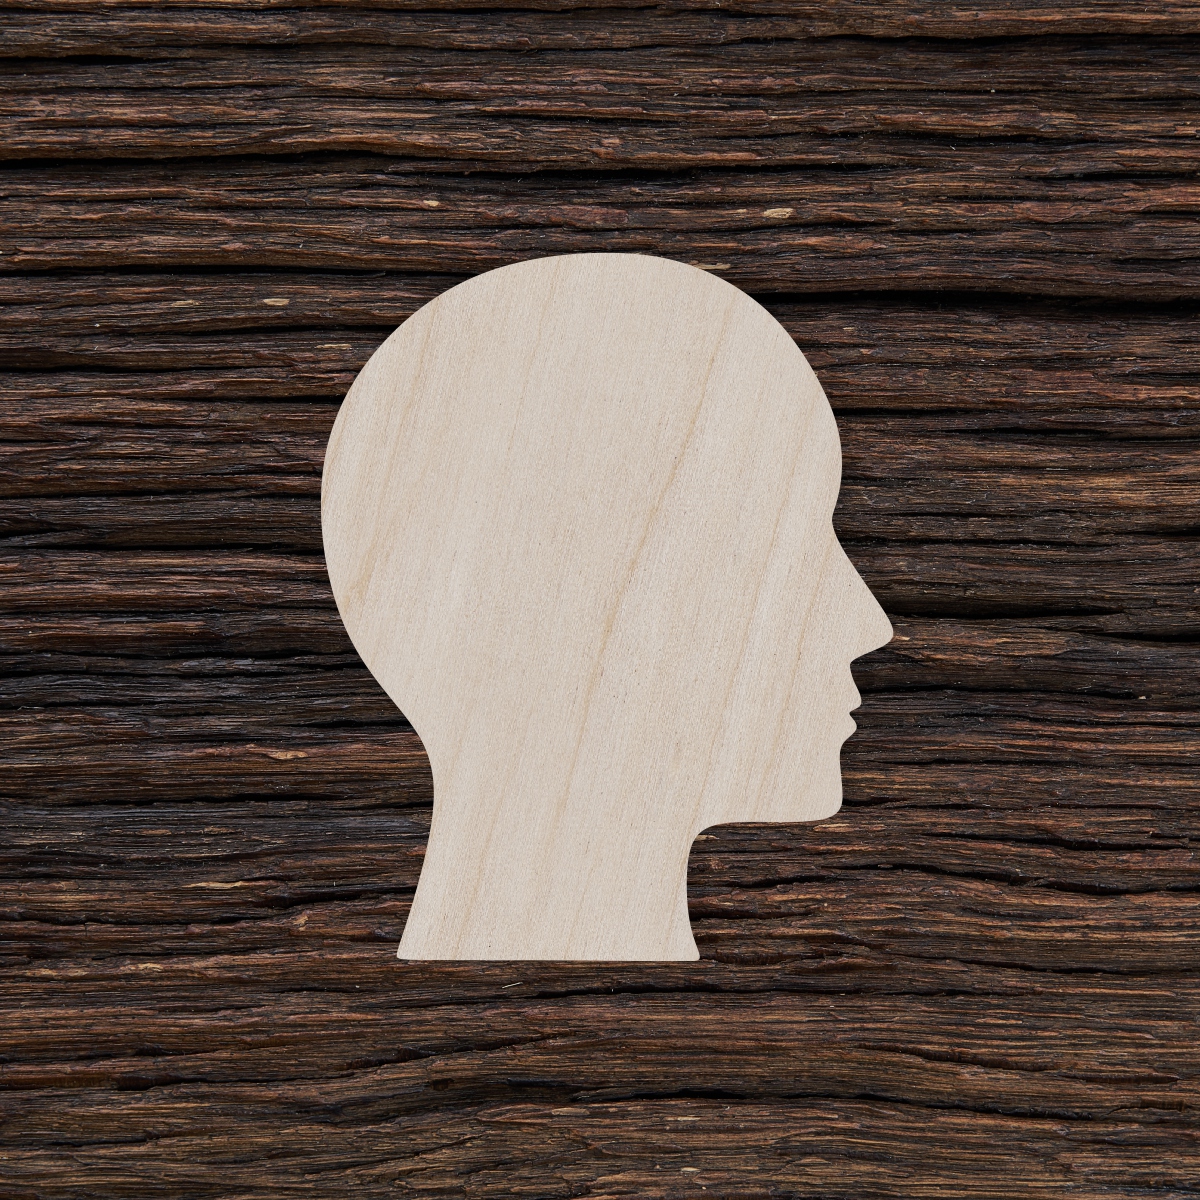 6žmogaus galva - medinis gaminys, pjautas lazeriu - dekoravimui ir dažymui